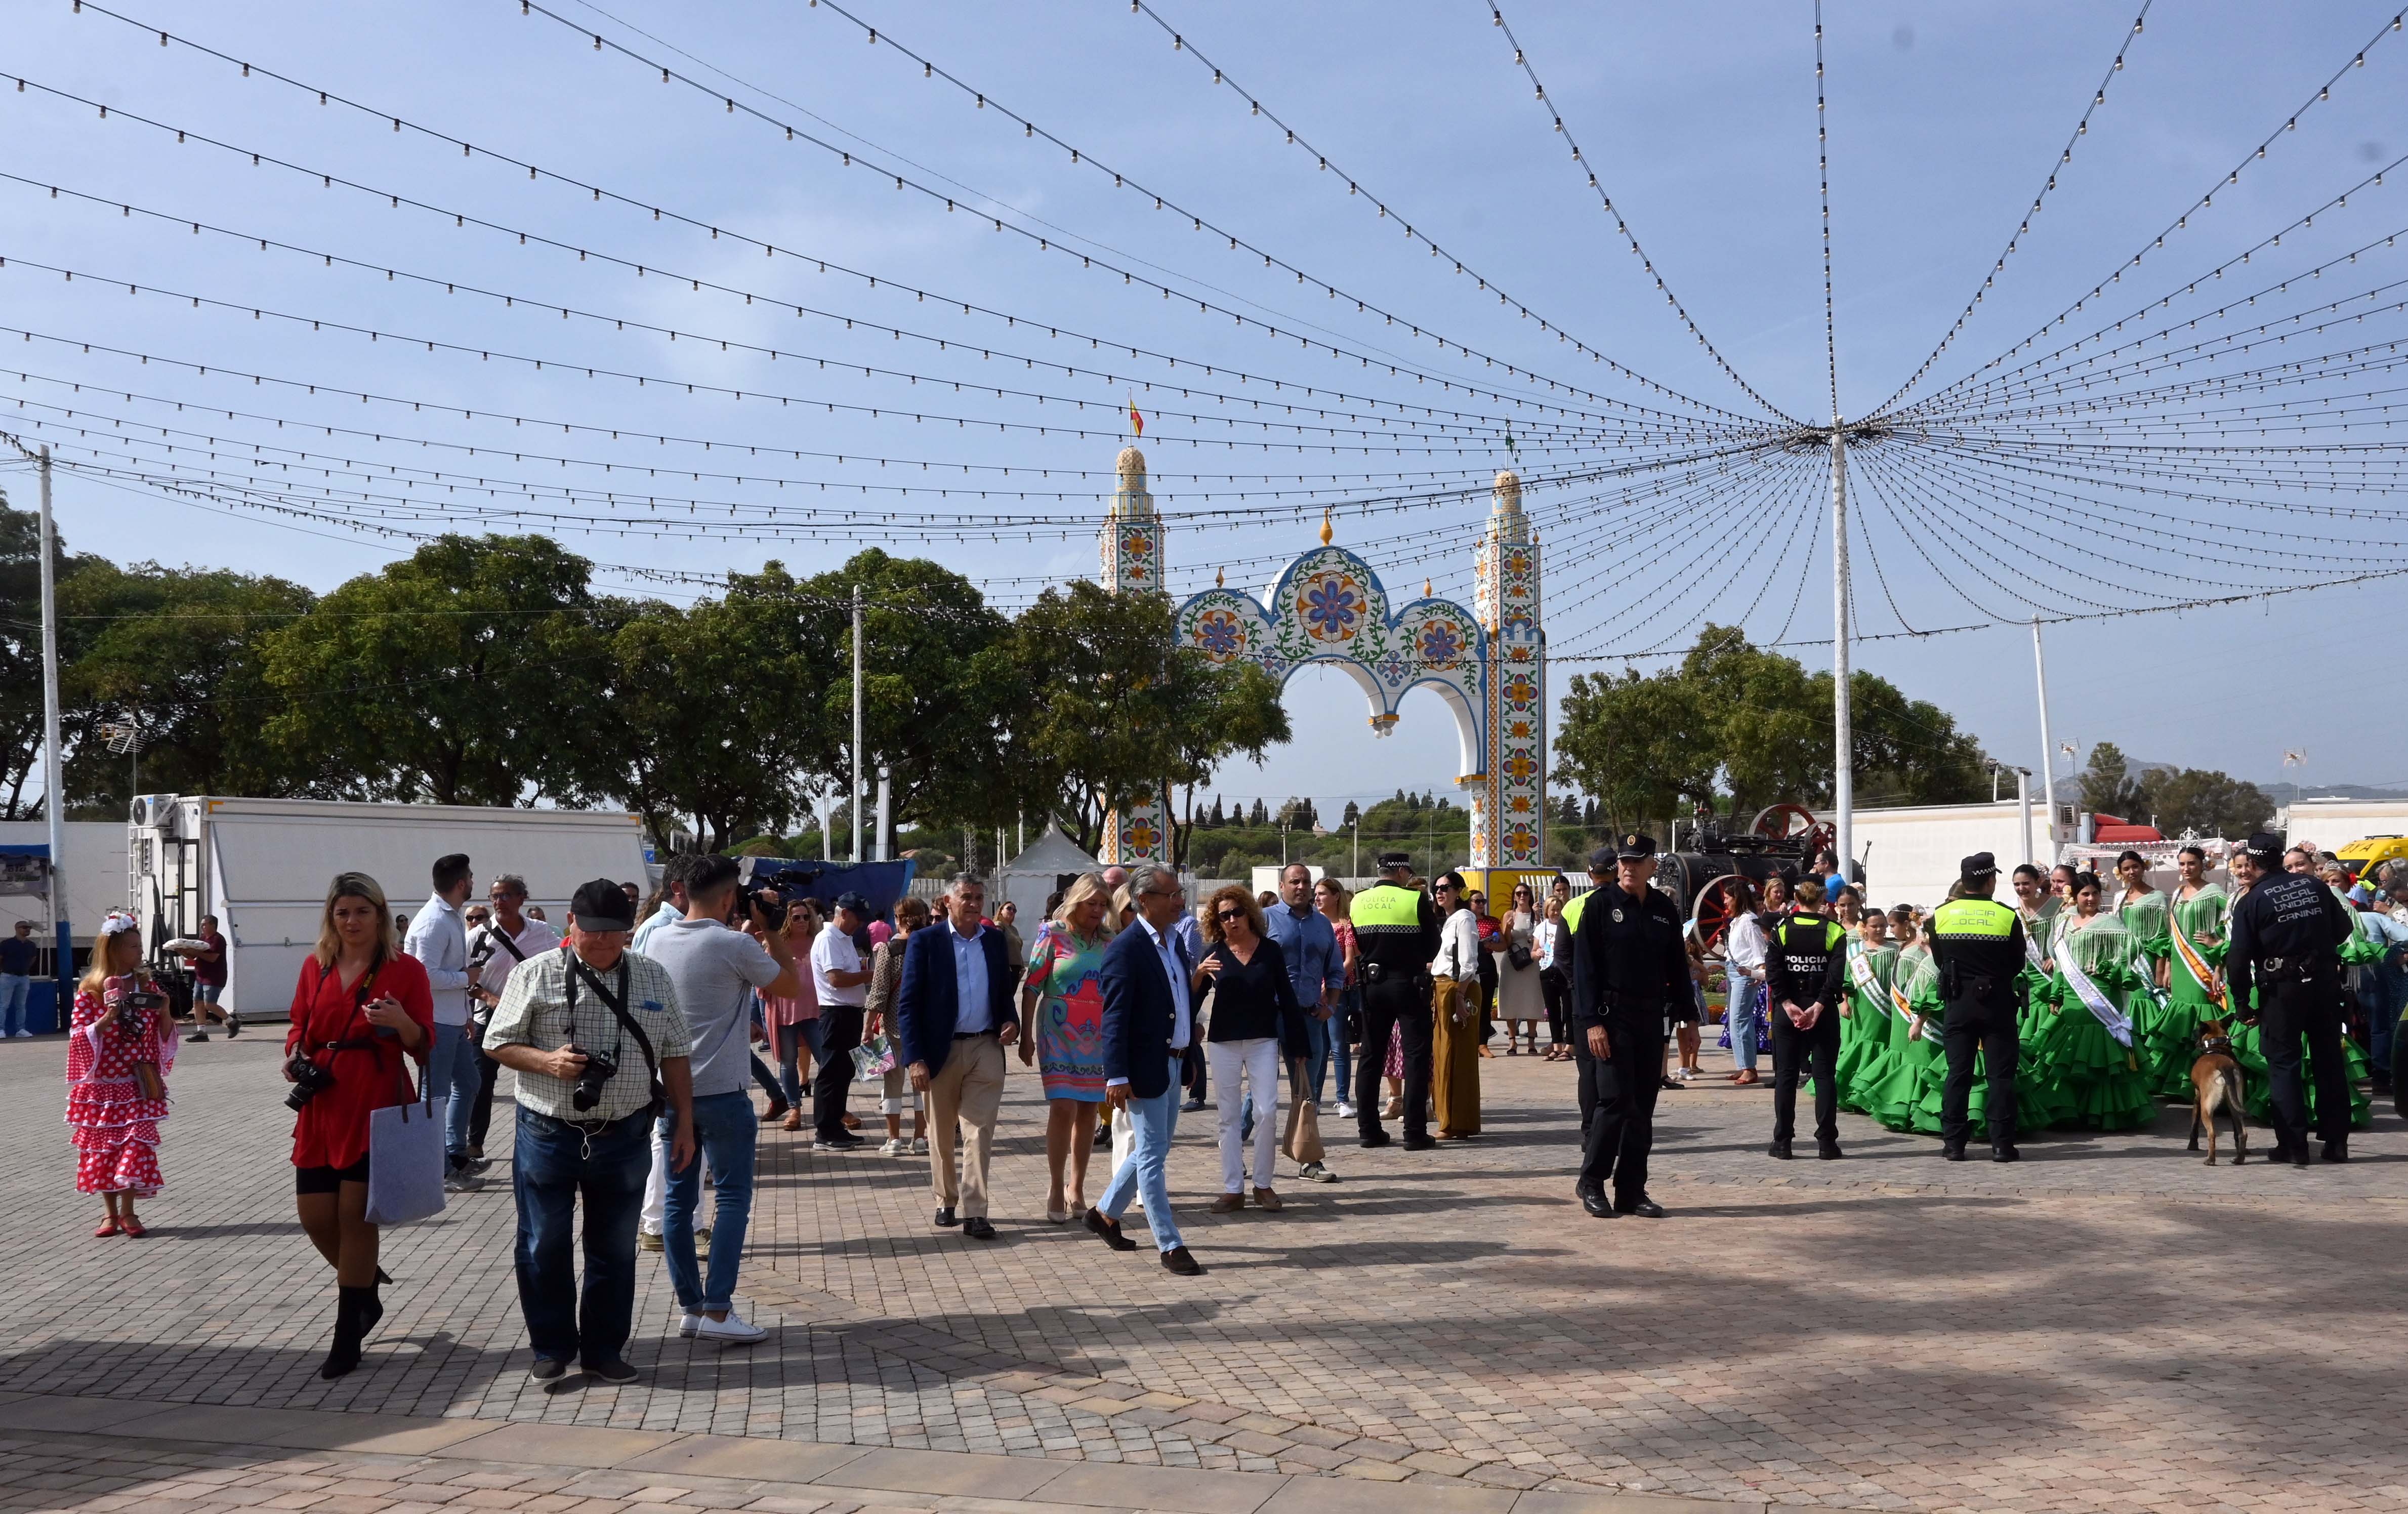 Fotos: San Pedro Alcántara Feria 2022... in pictures